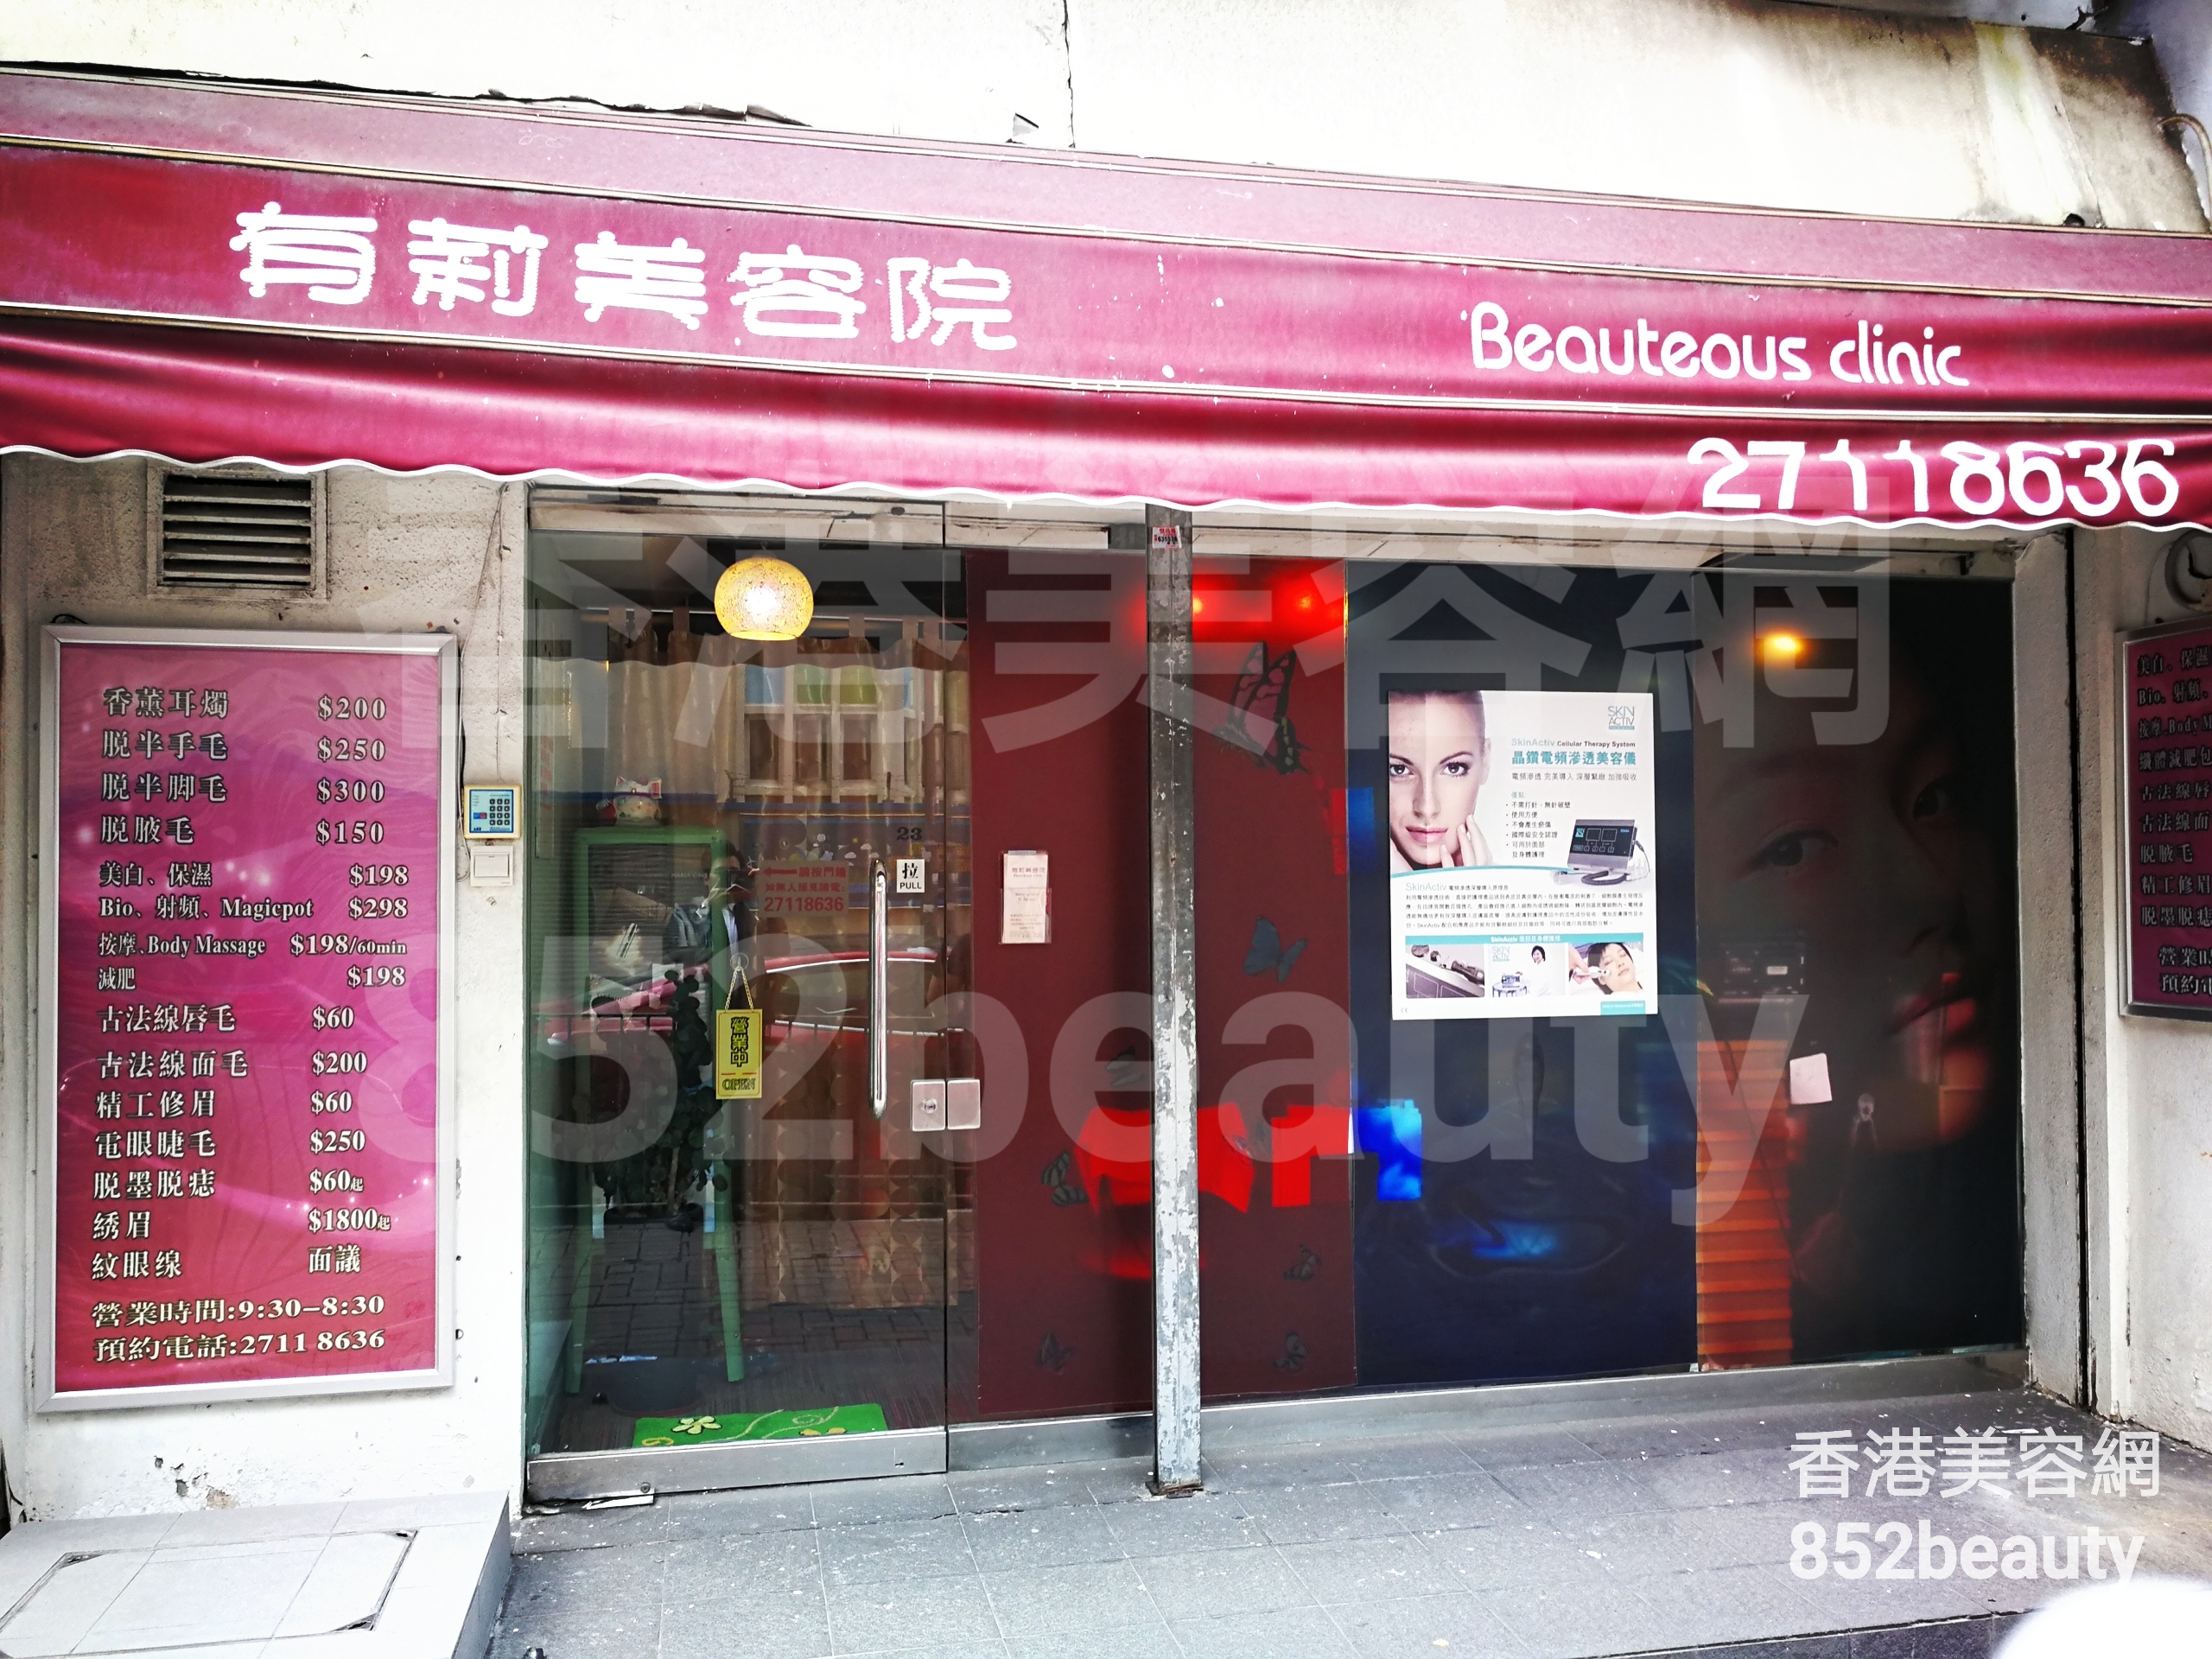 香港美容網 Hong Kong Beauty Salon 美容院 / 美容師: 有莉美容院